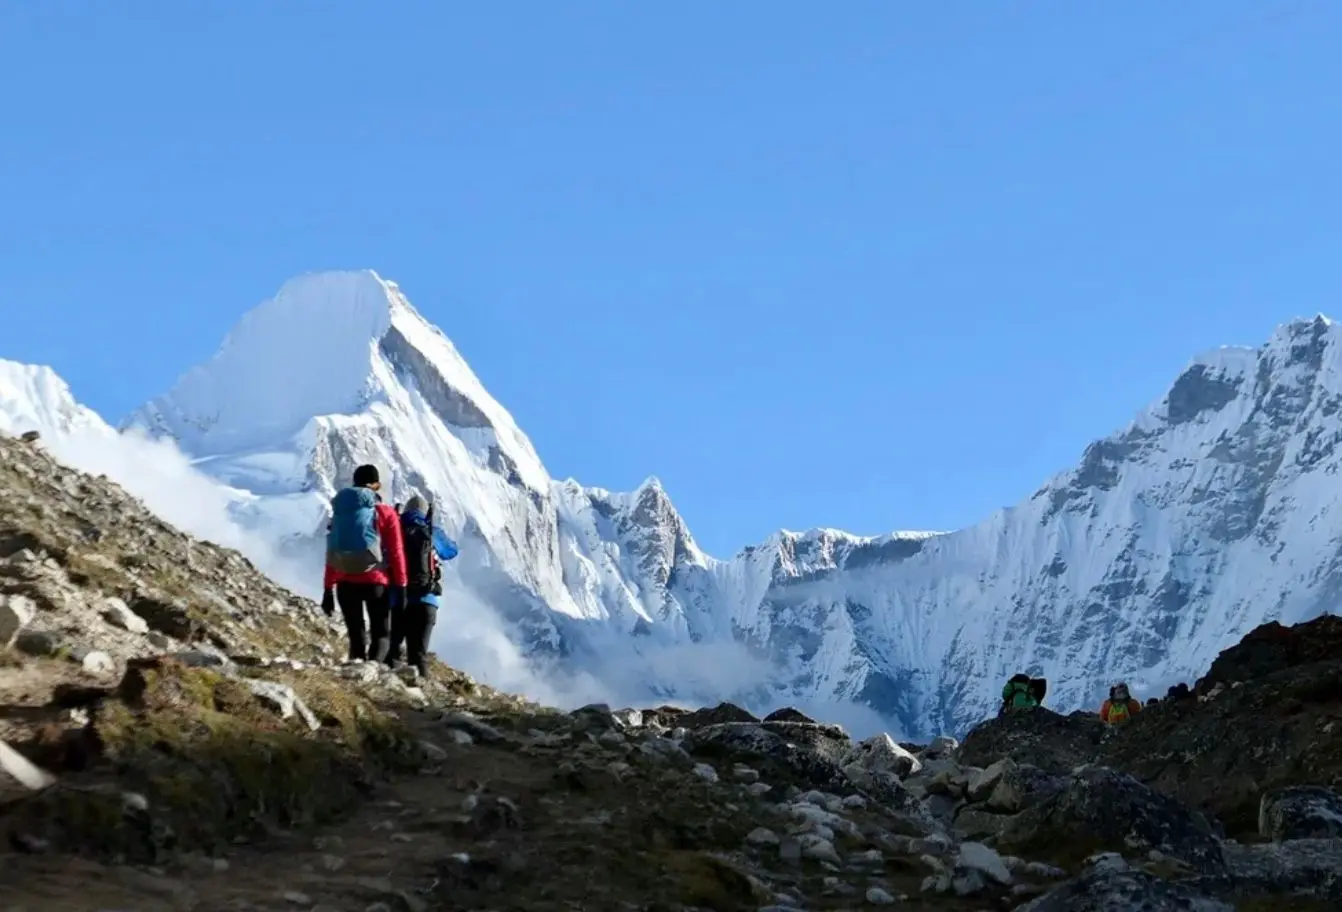 Альпіністів, які піднімаються на Еверест, зобов'язано мати з собою GPS-трекер. За цією вимогою стежать організатори та рятувальні служби для забезпечення безпеки та локалізації у разі надзвичайних ситуацій.